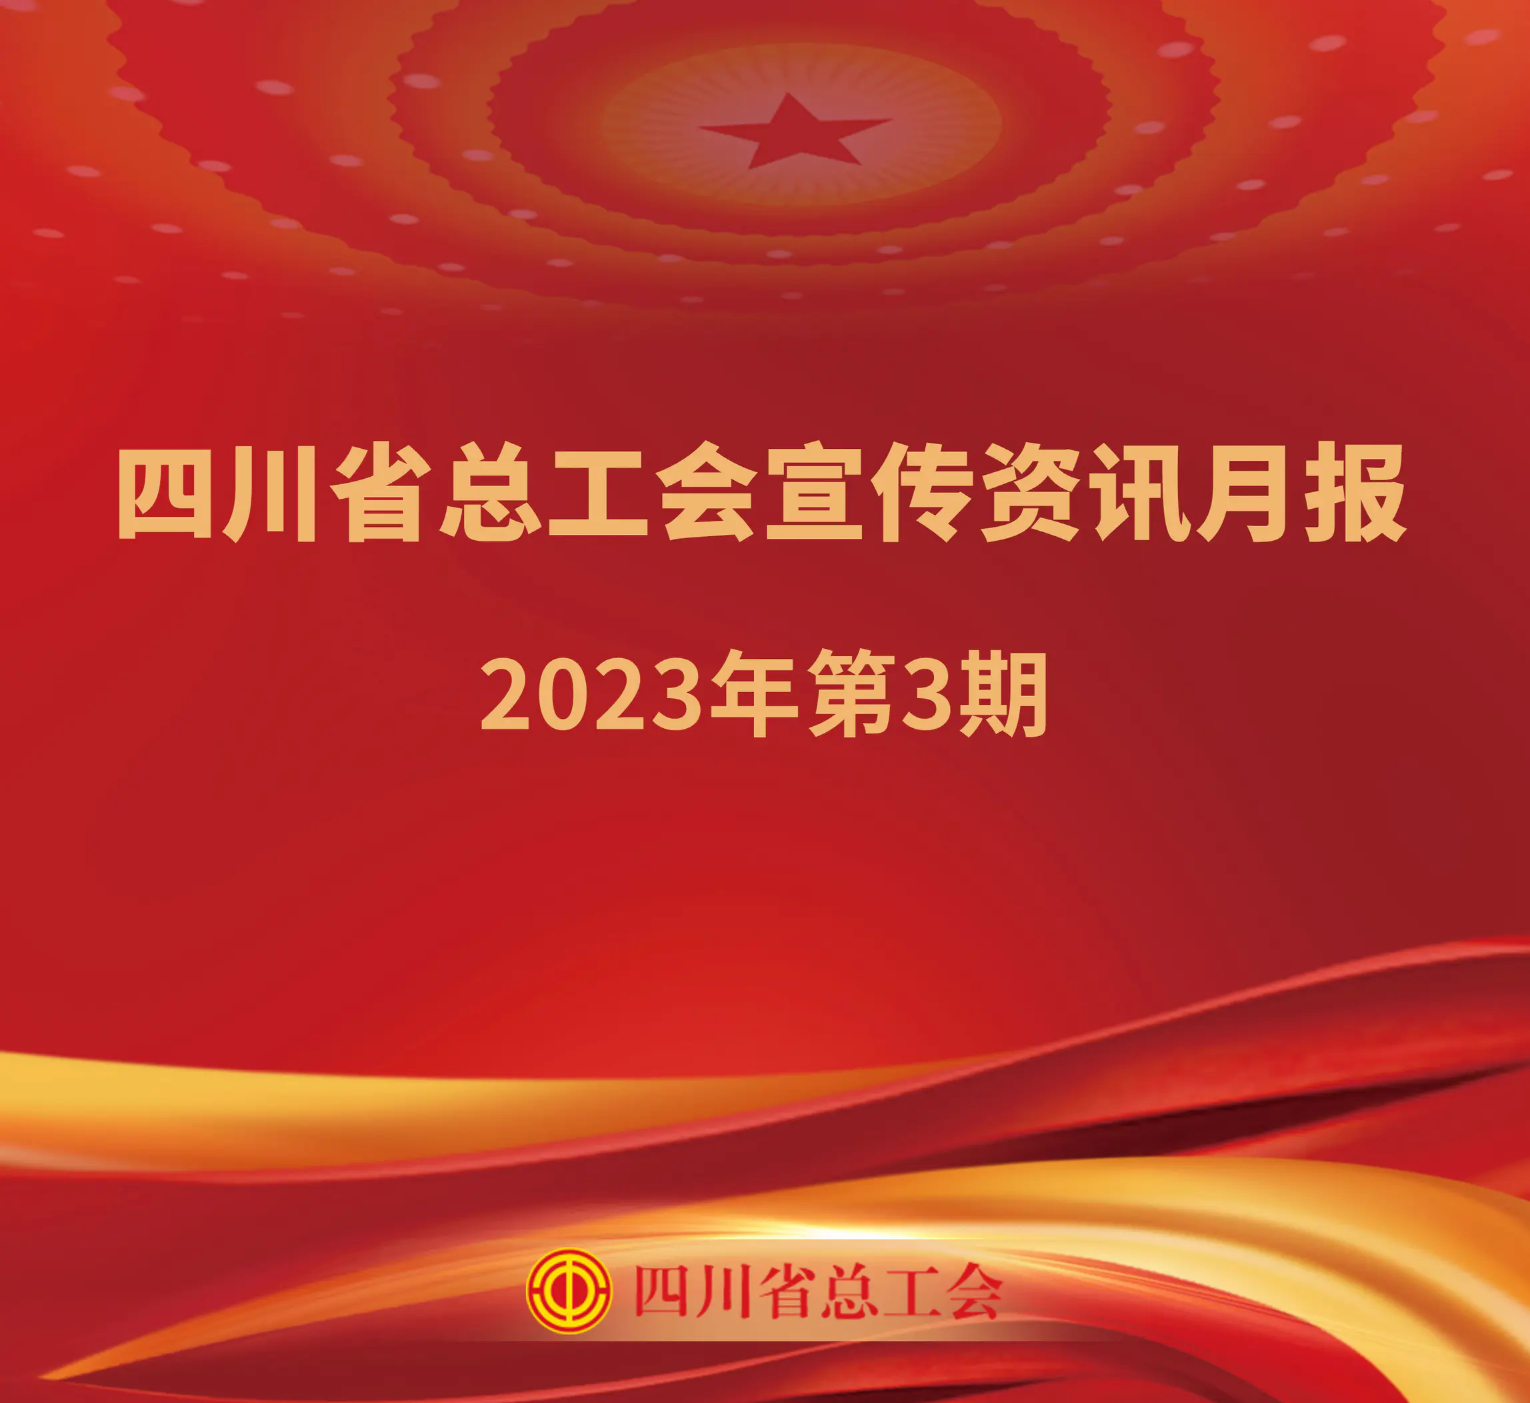 四川省总工会宣传资讯月报2023年第3期